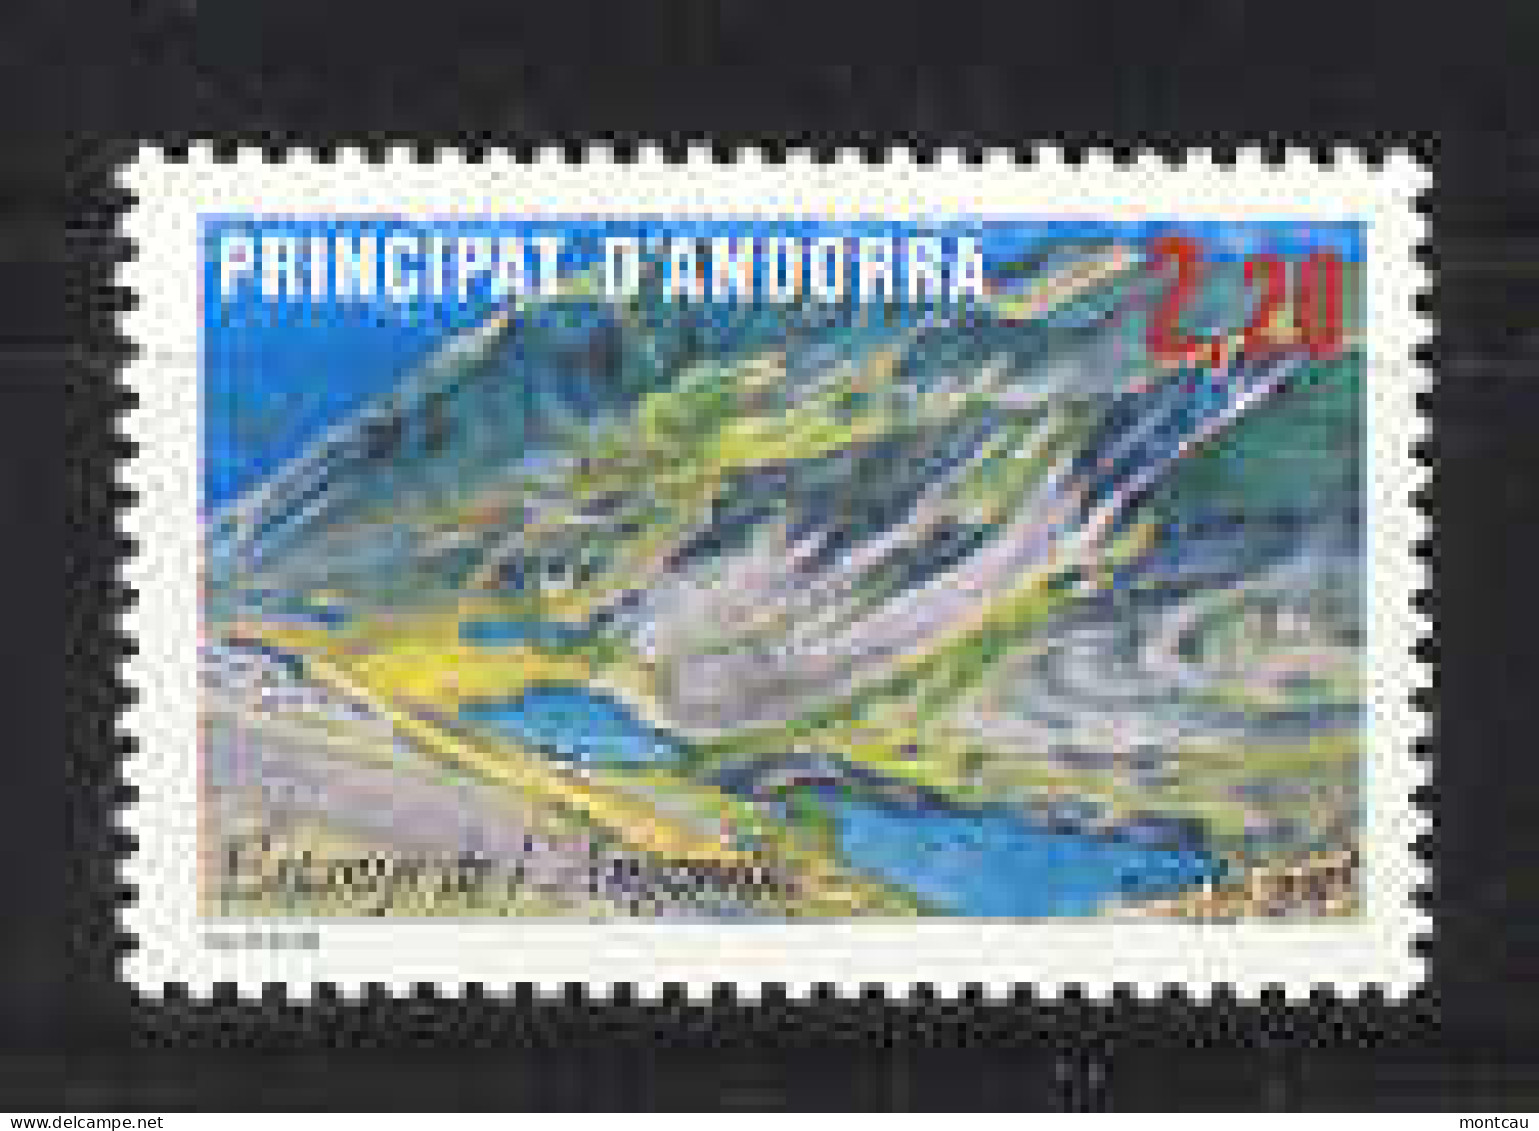 Andorra -Franc 1986 Lago De Angonella Y=351 E=372 (**) - Unused Stamps